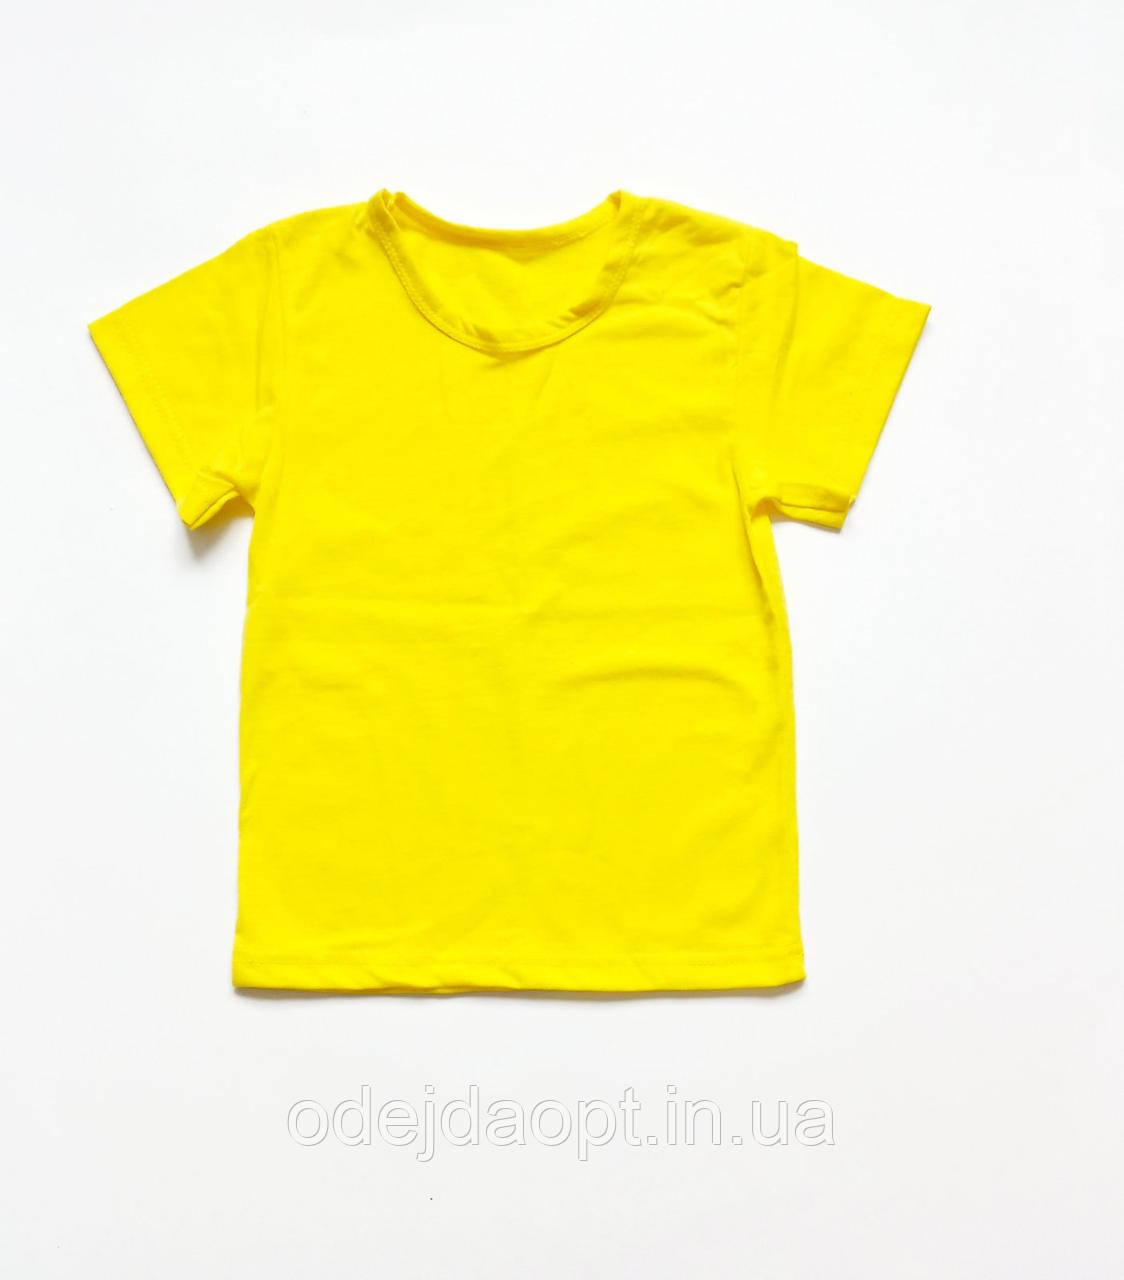 Дитяча жовта футболка гуртом і в роздріб